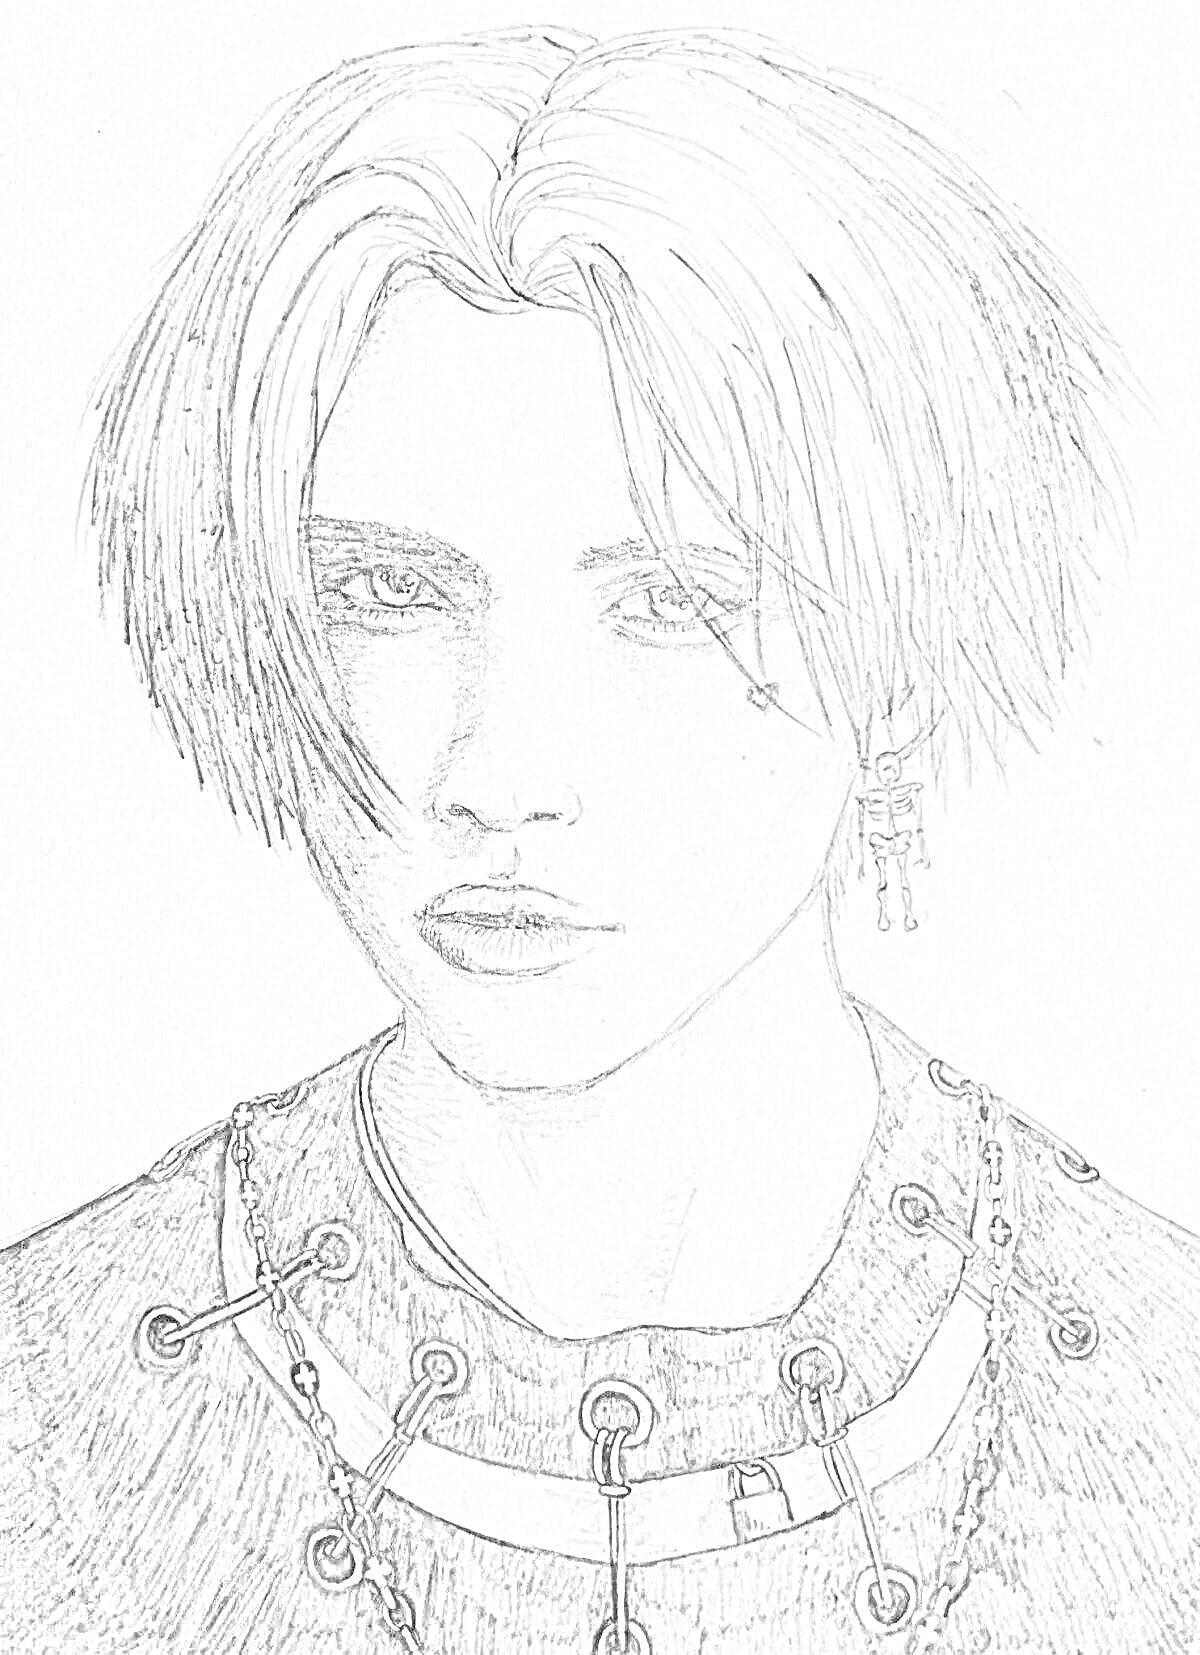 Раскраска Портрет человека с прямыми волосами, серьгой и киберпанковскими цепями